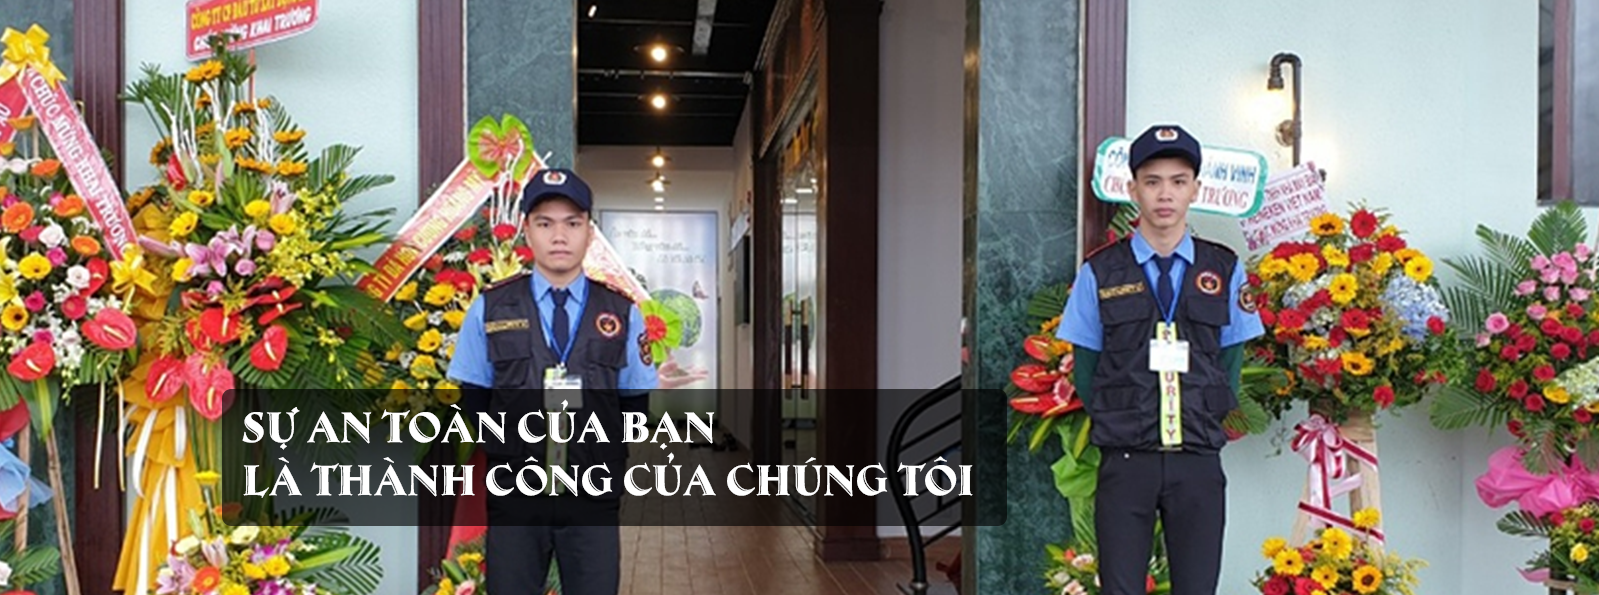 Lợi ích khi sử dụng dịch vụ bảo vệ sự kiện tại Đà Nẵng